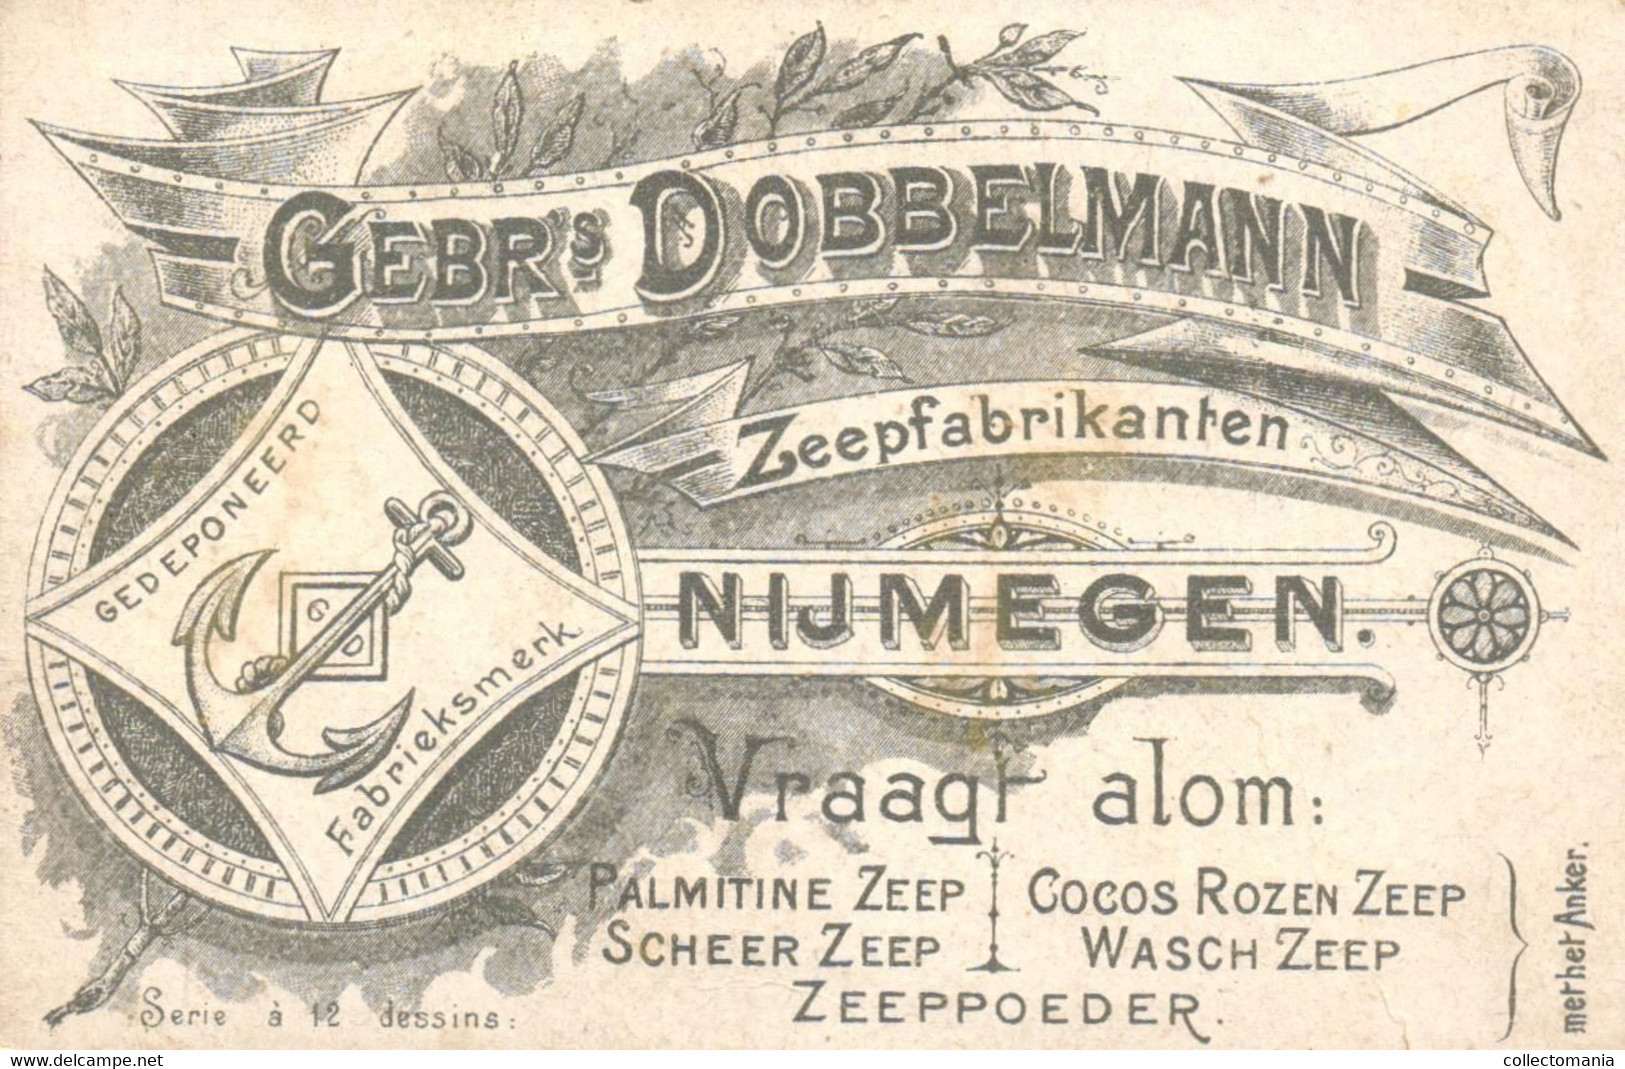 anno 1900 -  5 kaarten Gebroeders Dobbelmann Zeepfabrikanten Nijmegem Lohengrin, Japan, Spanje, zeer mooie reklame